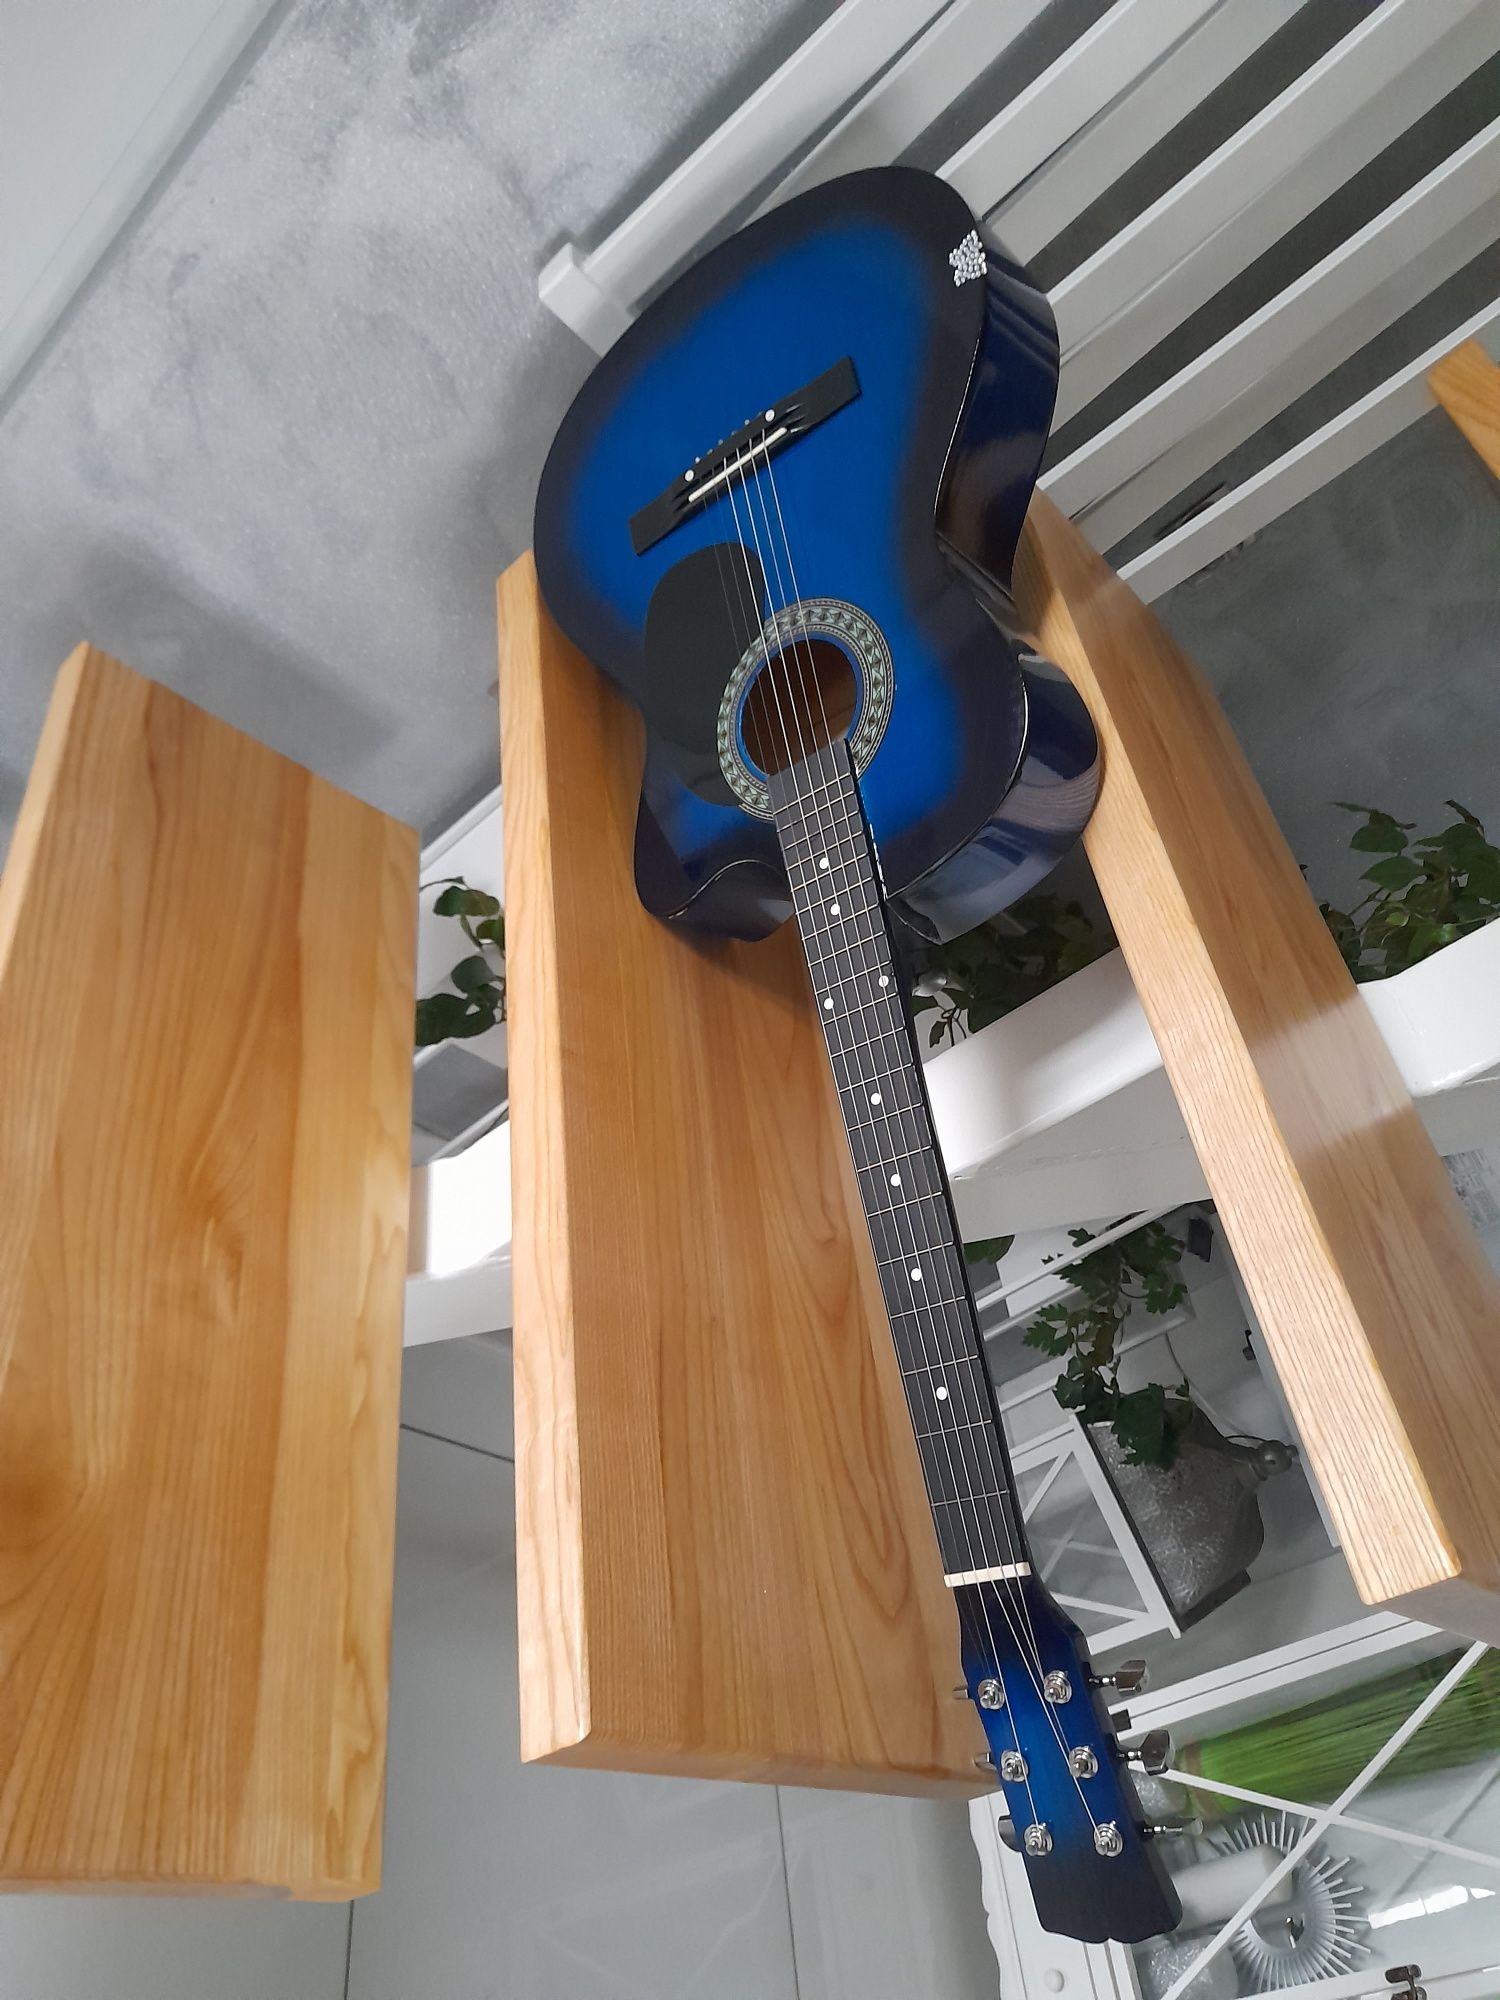 Gitara akustyczna Castelo G3 rozmiar 4/4 niebieski połysk PRZEPIĘKNA